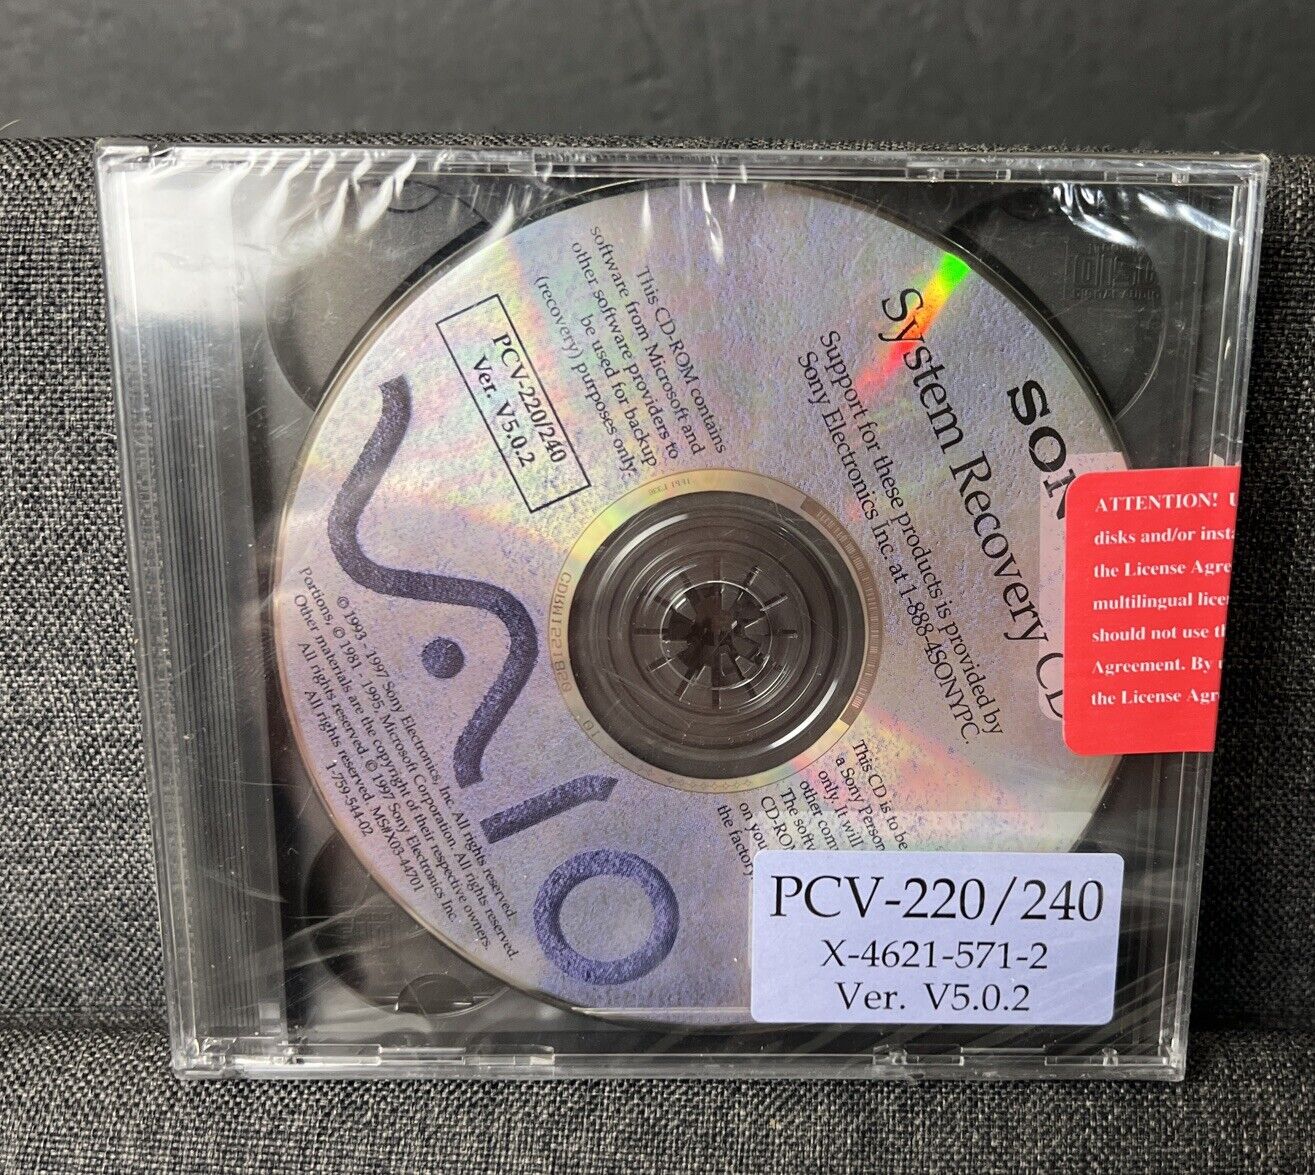 Sony Vaio System Recovery CD PCV - 220/240 X-4621-571-2 Ver. V5.0.2 Brand New